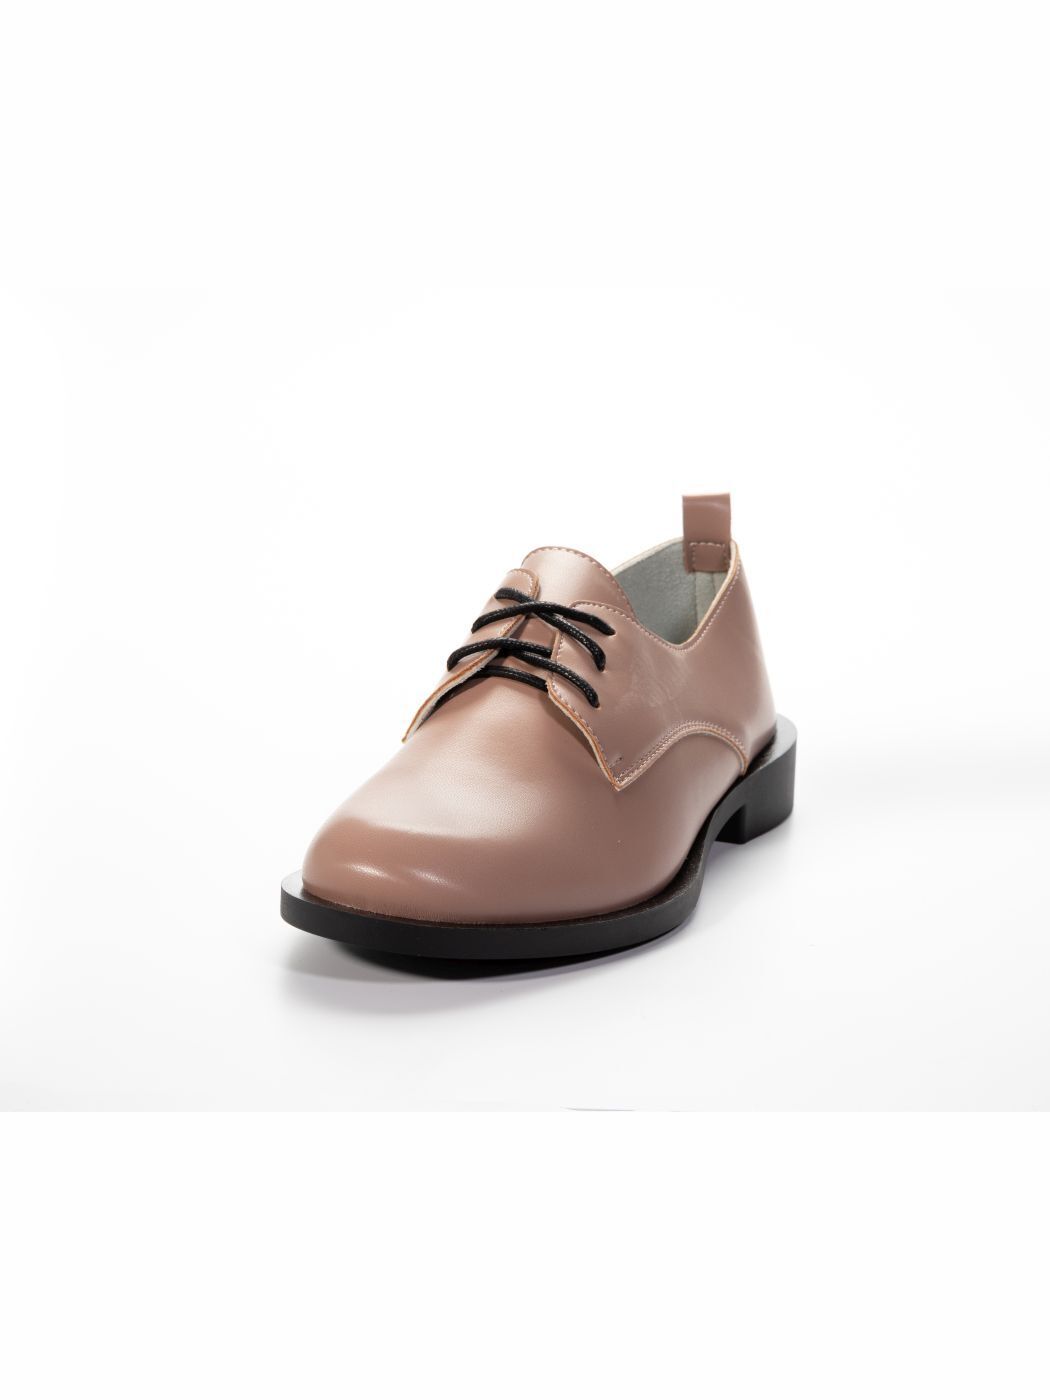 Туфли Oxfords женские пудровые экокожа каблук устойчивый демисезон 13M вид 1